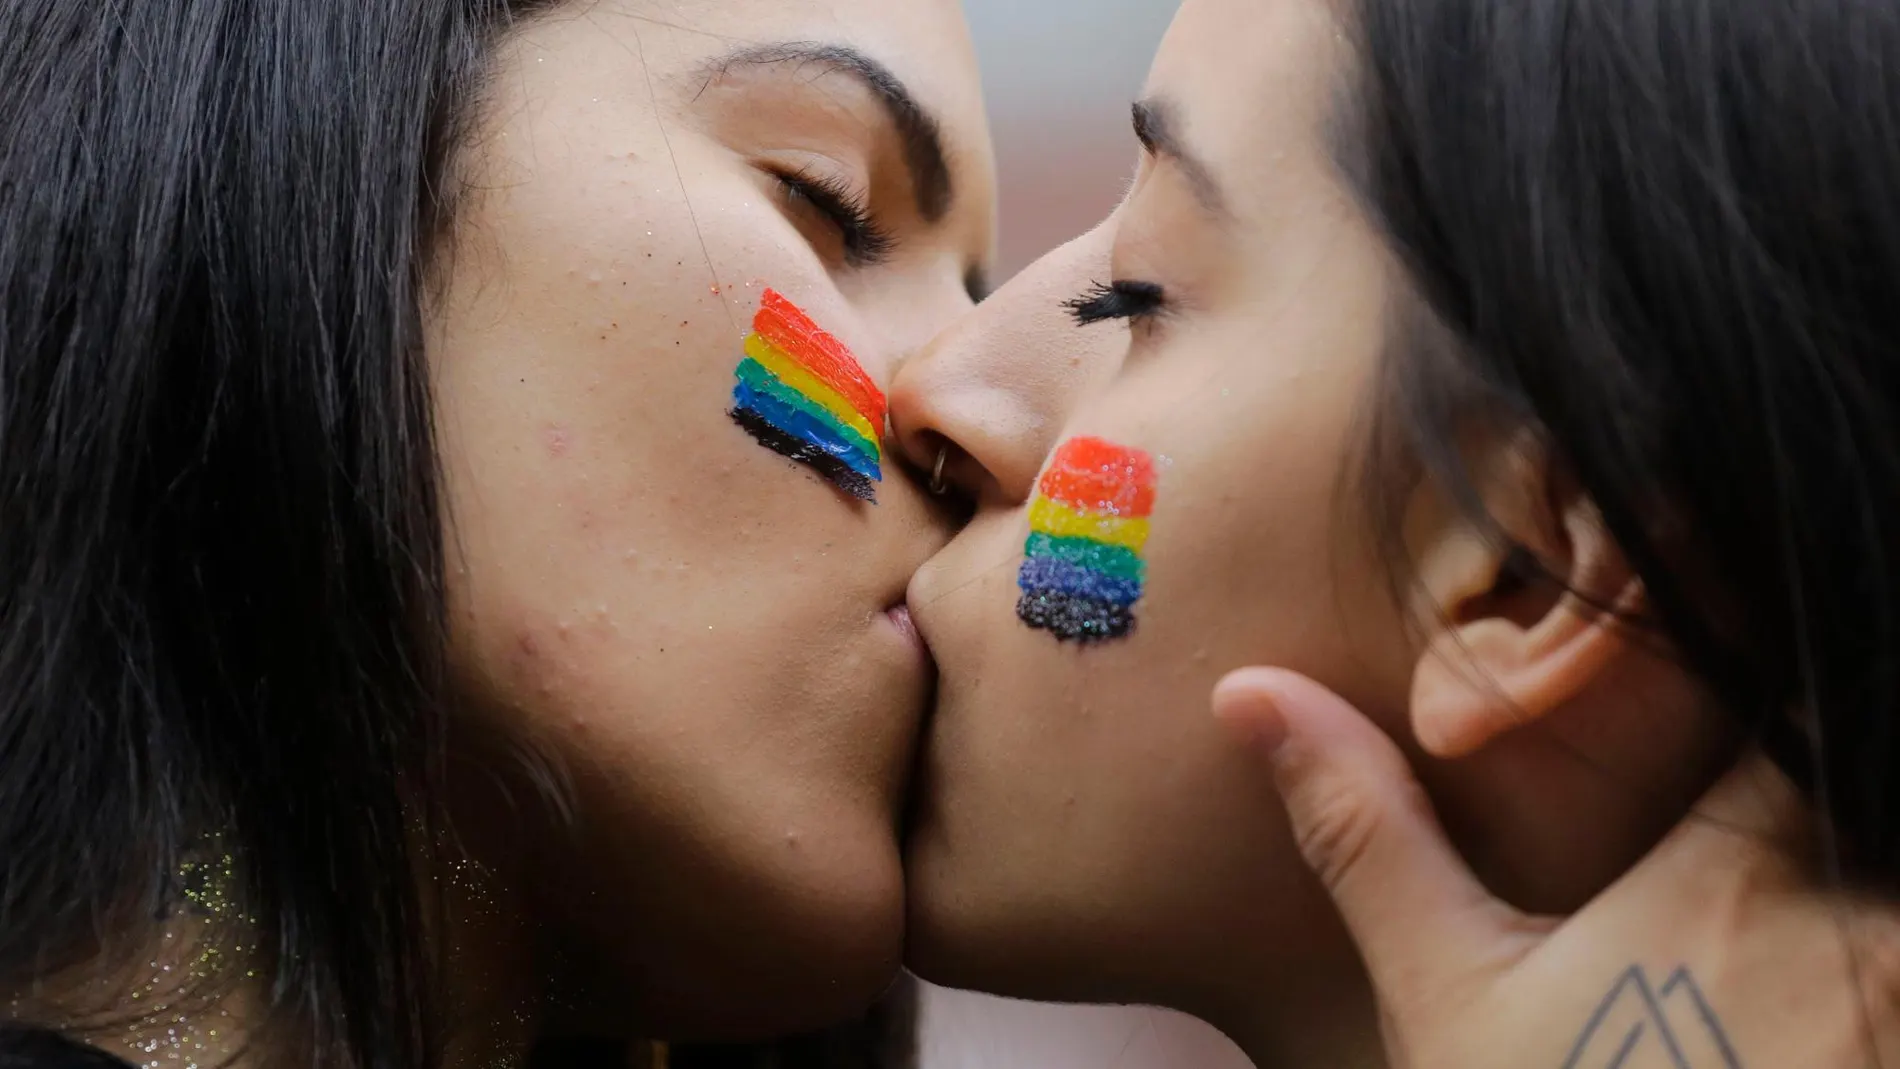 Imagen tomada a una pareja de lesbianas durante el Orgullo Gay de Sao Paulo en 2018